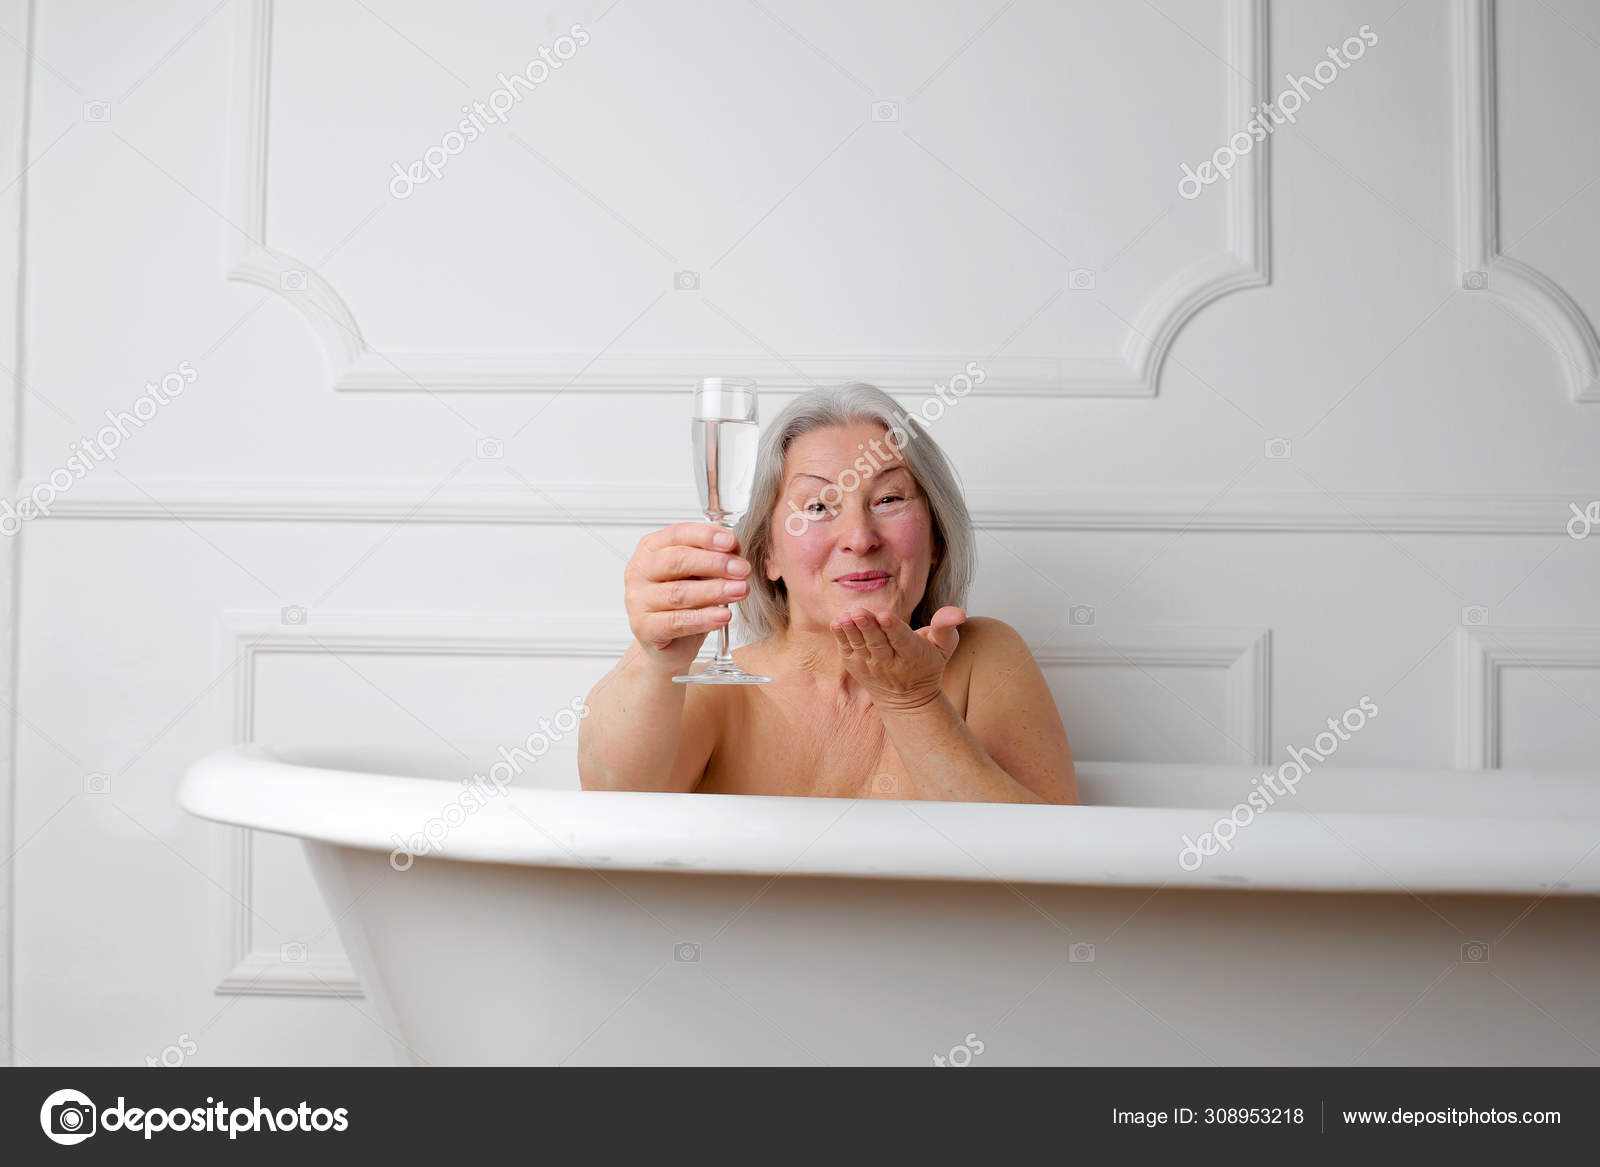 Granny in washroom